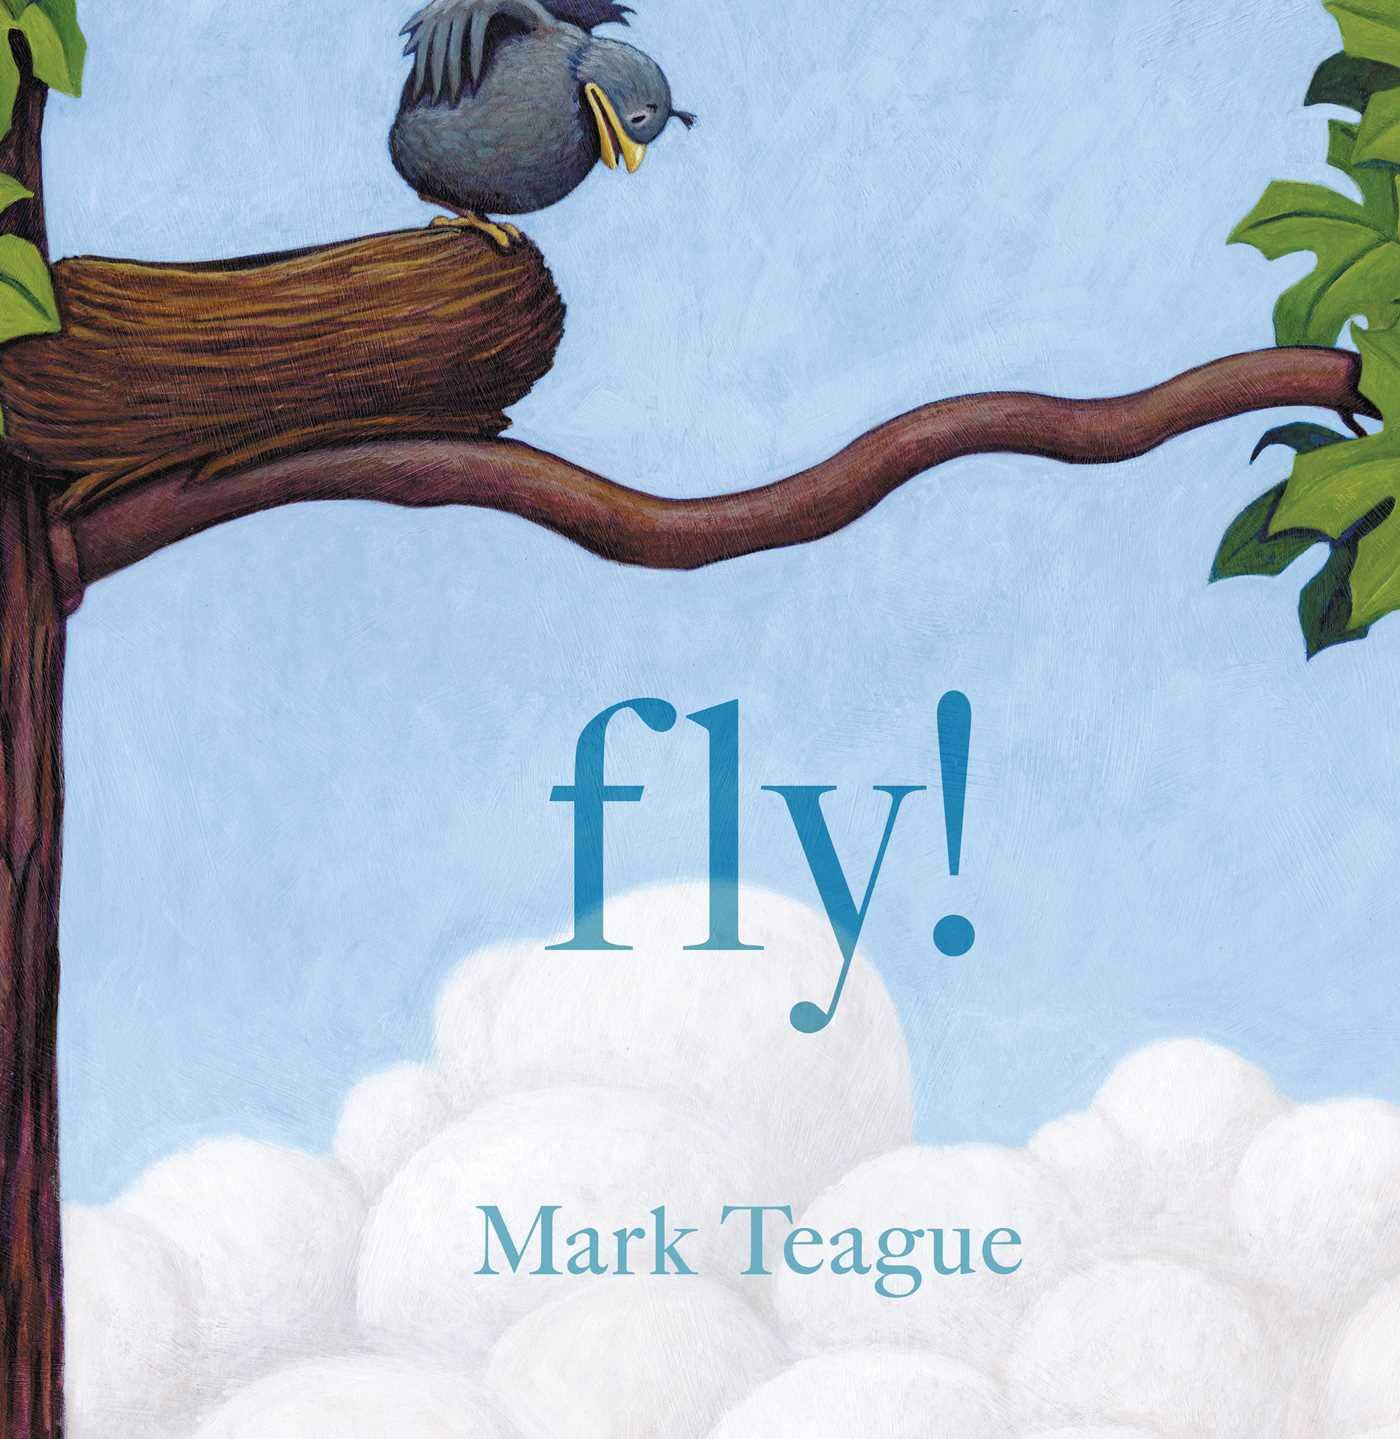 Fly! by Mark Teague